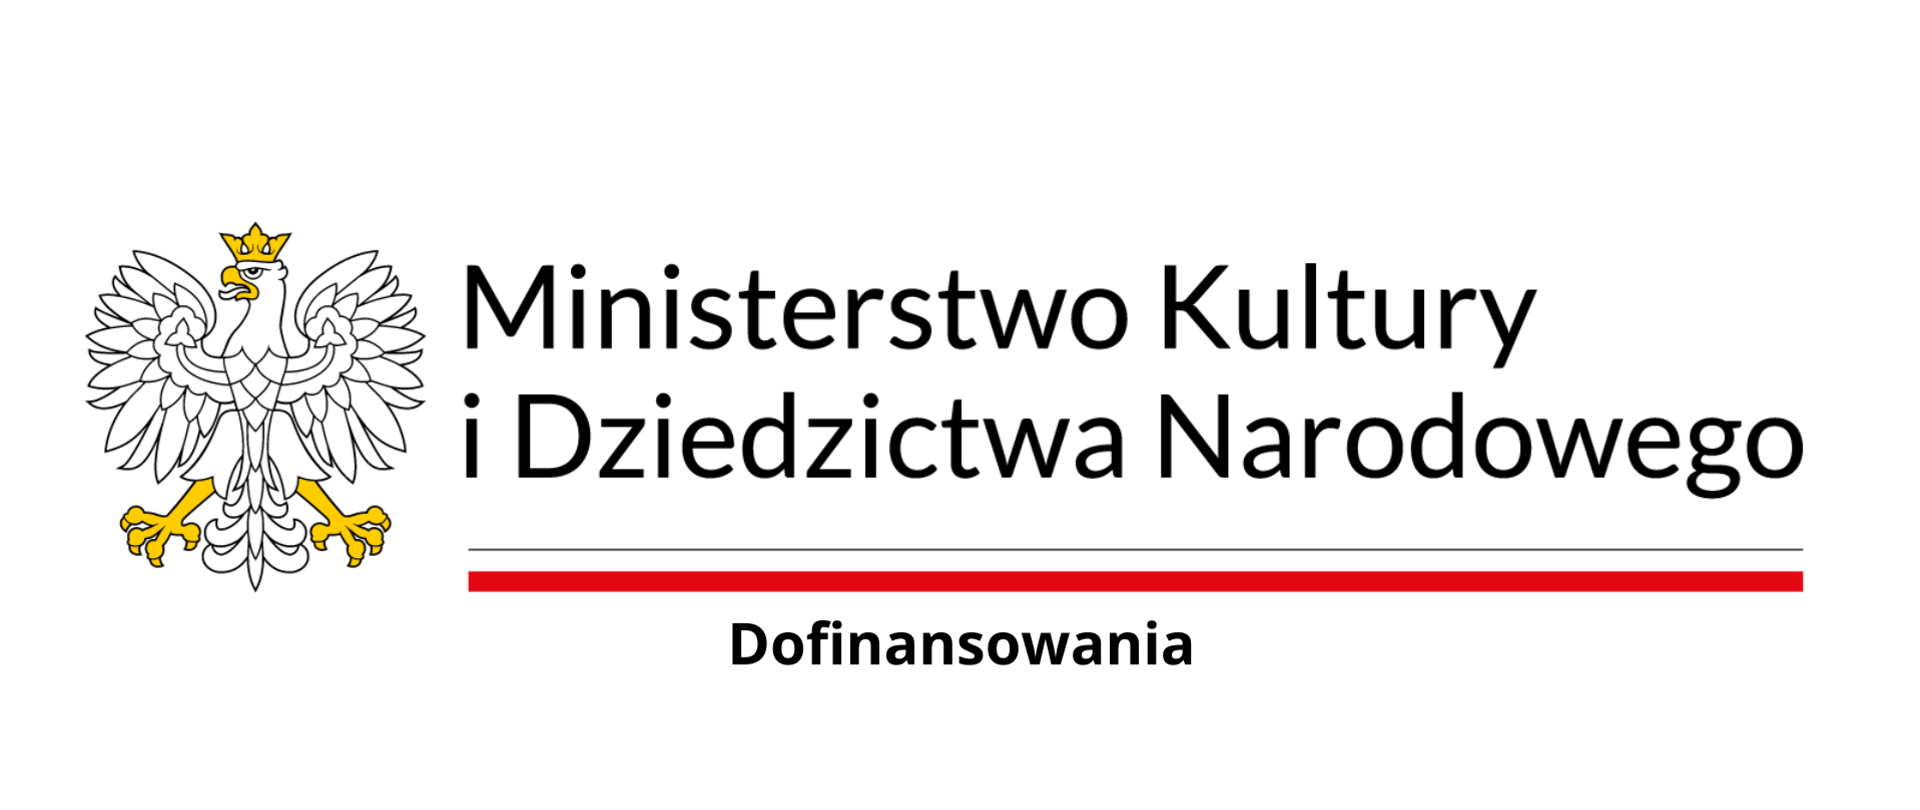 Logo Ministerstwa Kultury i Dziedzictwa Narodowego z wizerunkiem orła ustalonego dla godła Rzeczypospolitej Polskiej oraz barw Rzeczypospolitej Polskiej. W znaku zawarta jest również nazwa Ministerstwa Kultury i Dziedzictwa Narodowego.